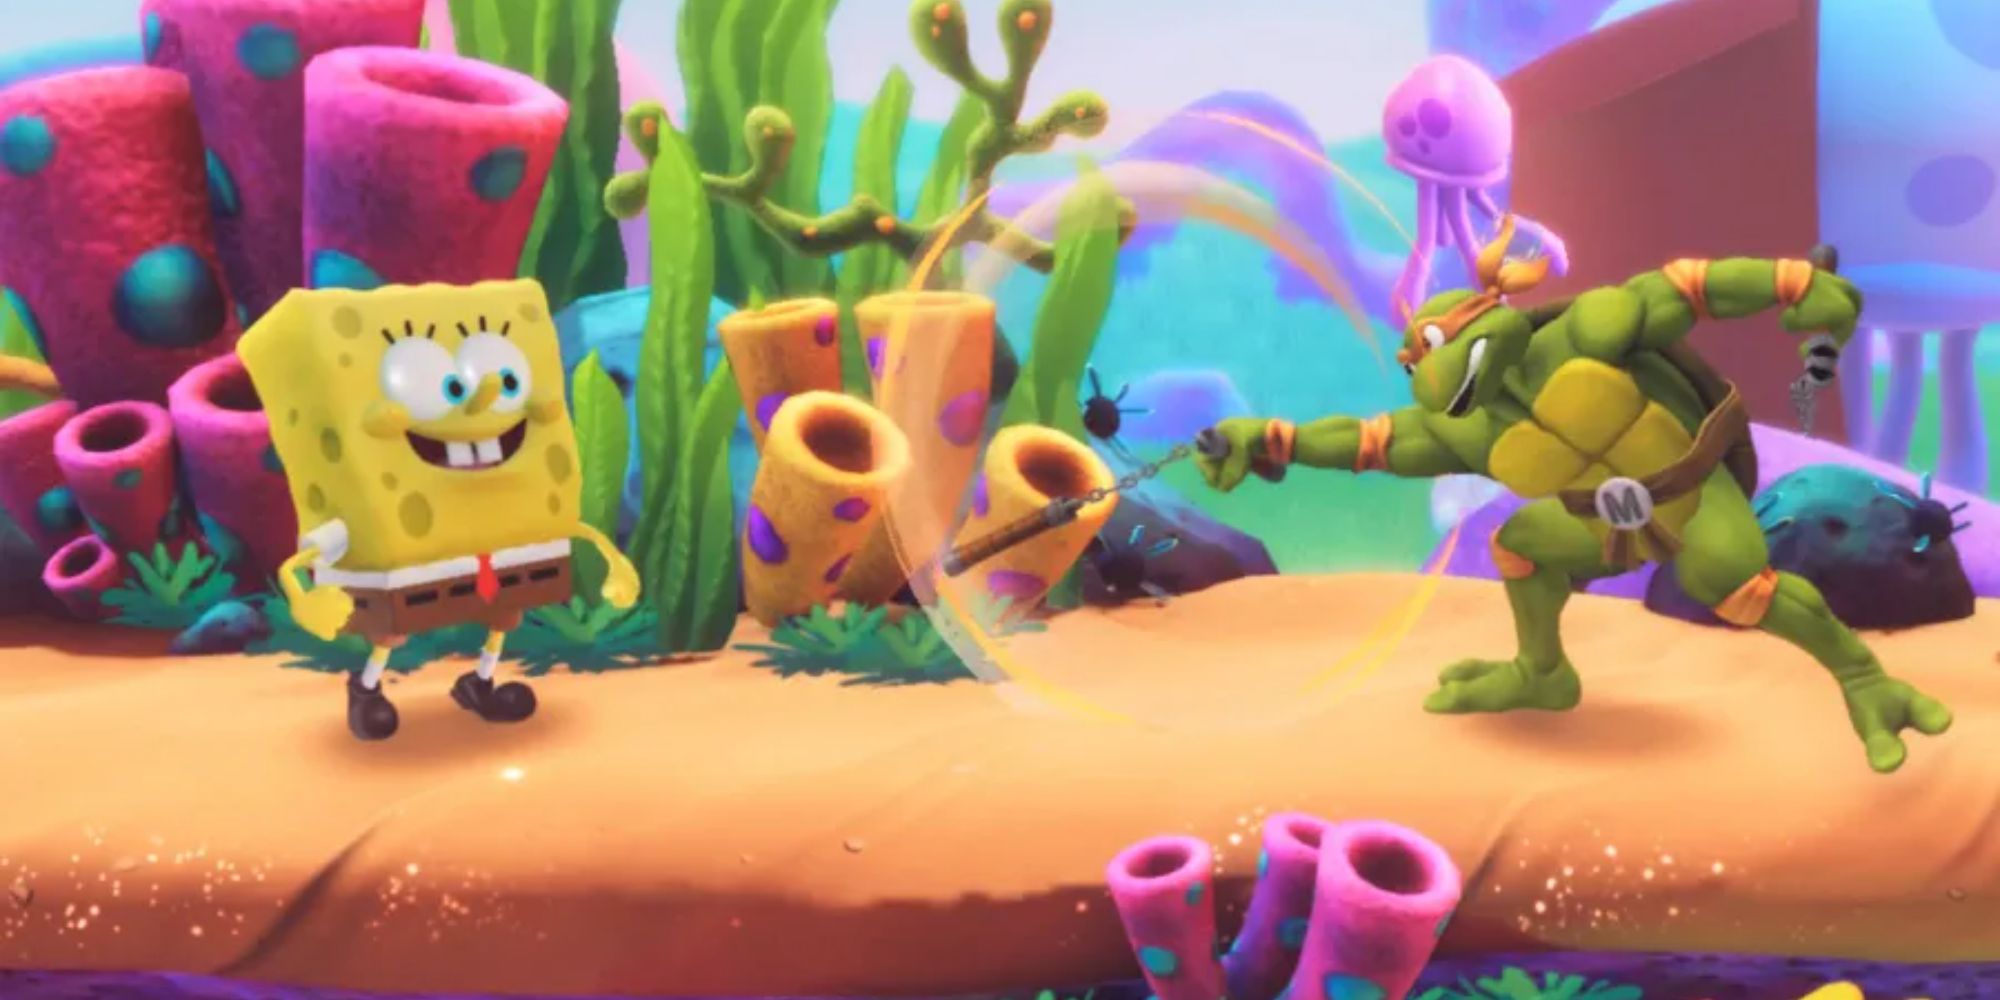 SpongeBob facing Michaelangelo